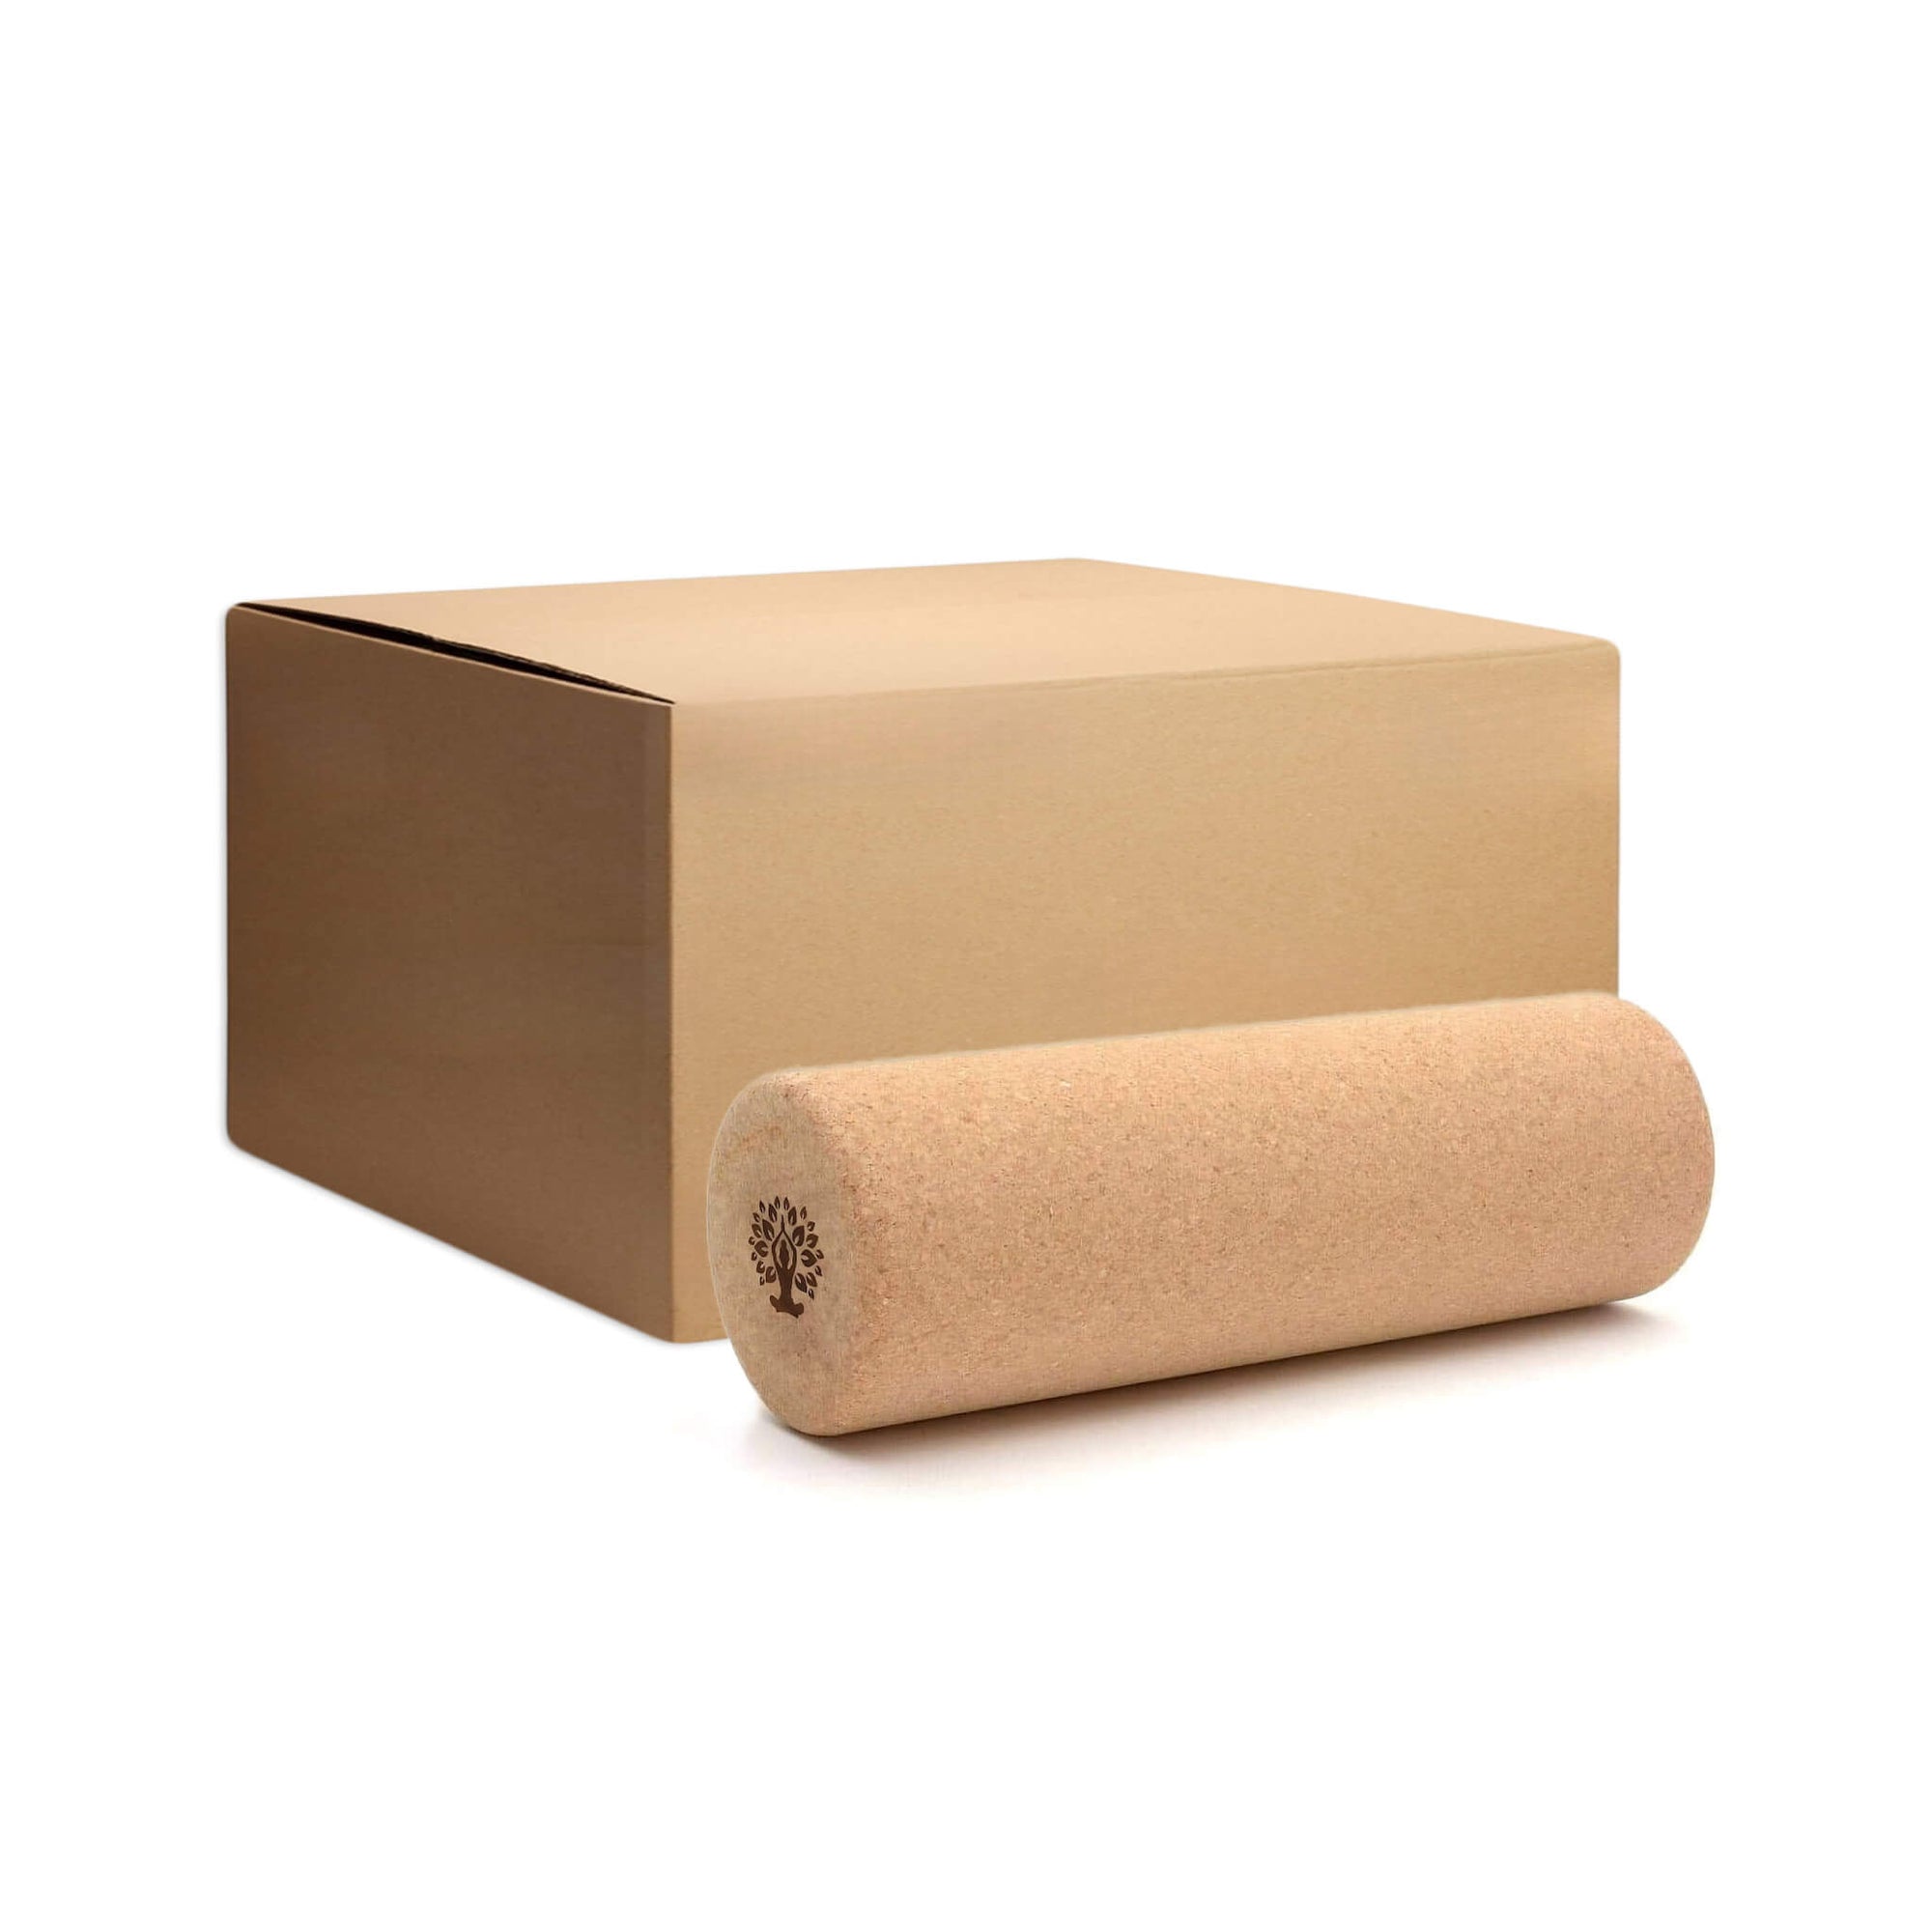 Cork Foam Rollers Wholesale - Box of 10